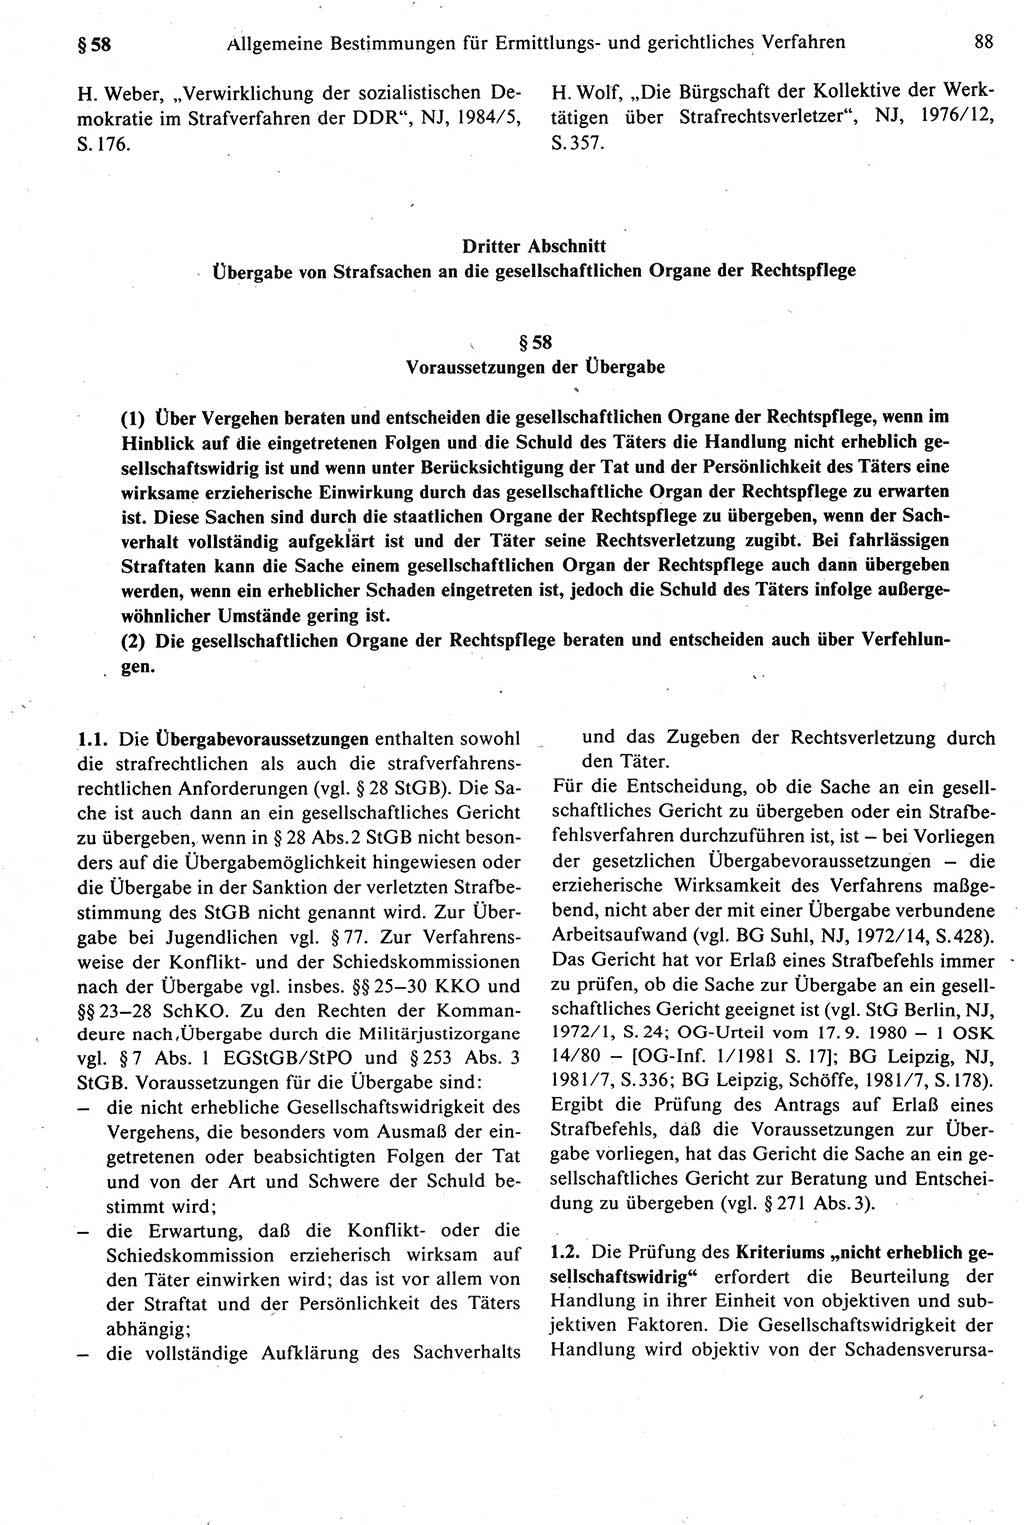 Strafprozeßrecht der DDR [Deutsche Demokratische Republik], Kommentar zur Strafprozeßordnung (StPO) 1987, Seite 88 (Strafprozeßr. DDR Komm. StPO 1987, S. 88)